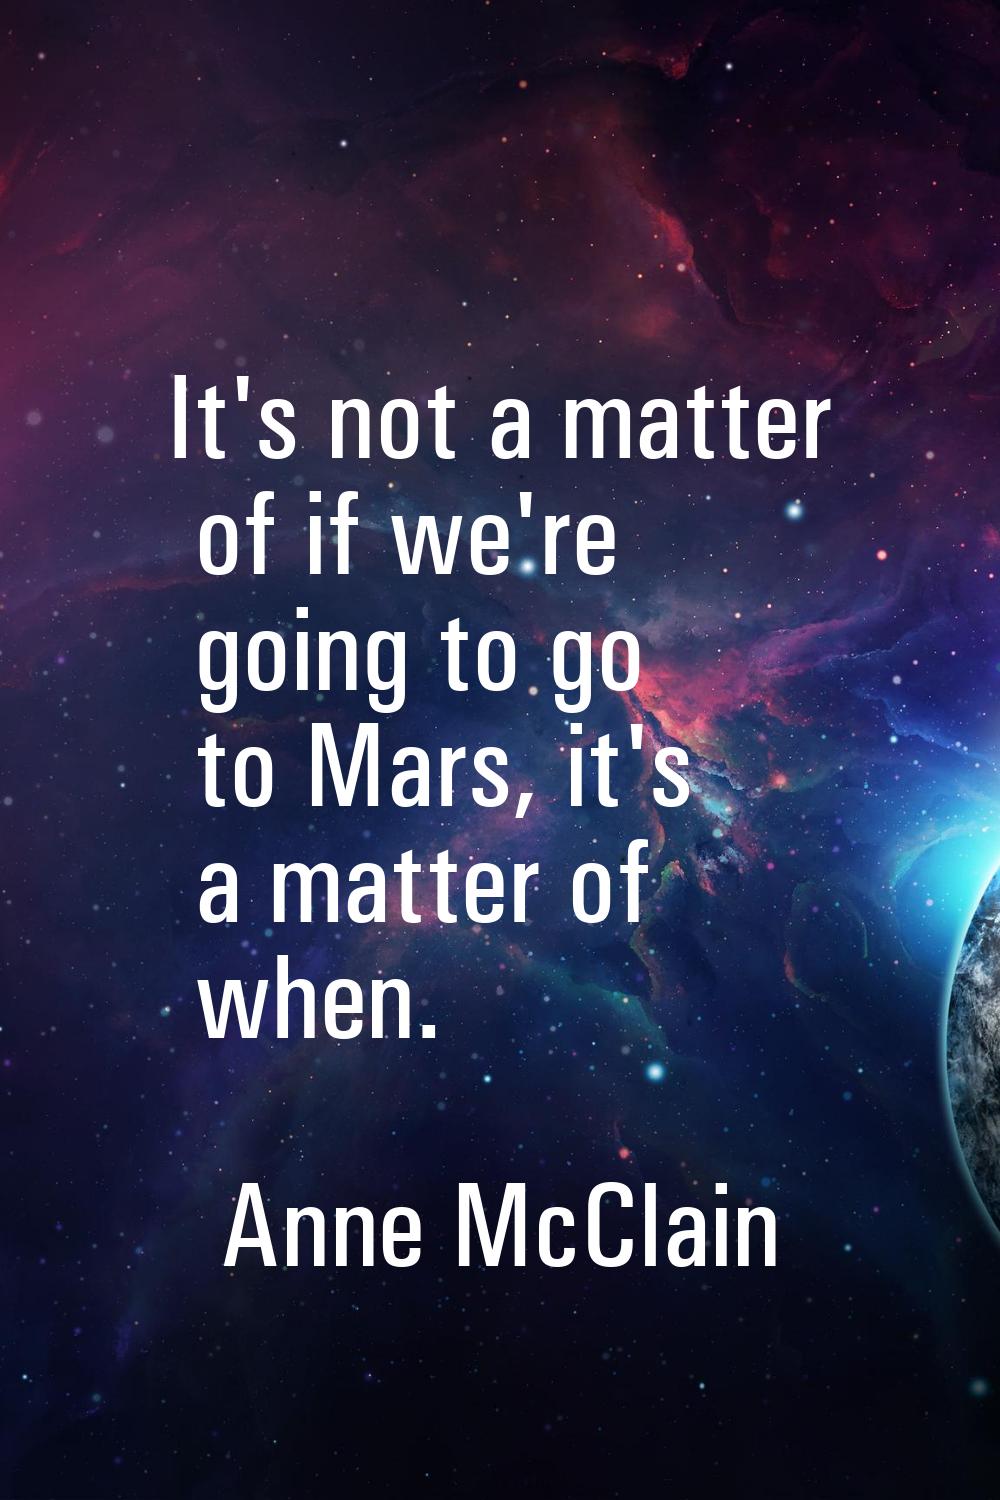 It's not a matter of if we're going to go to Mars, it's a matter of when.